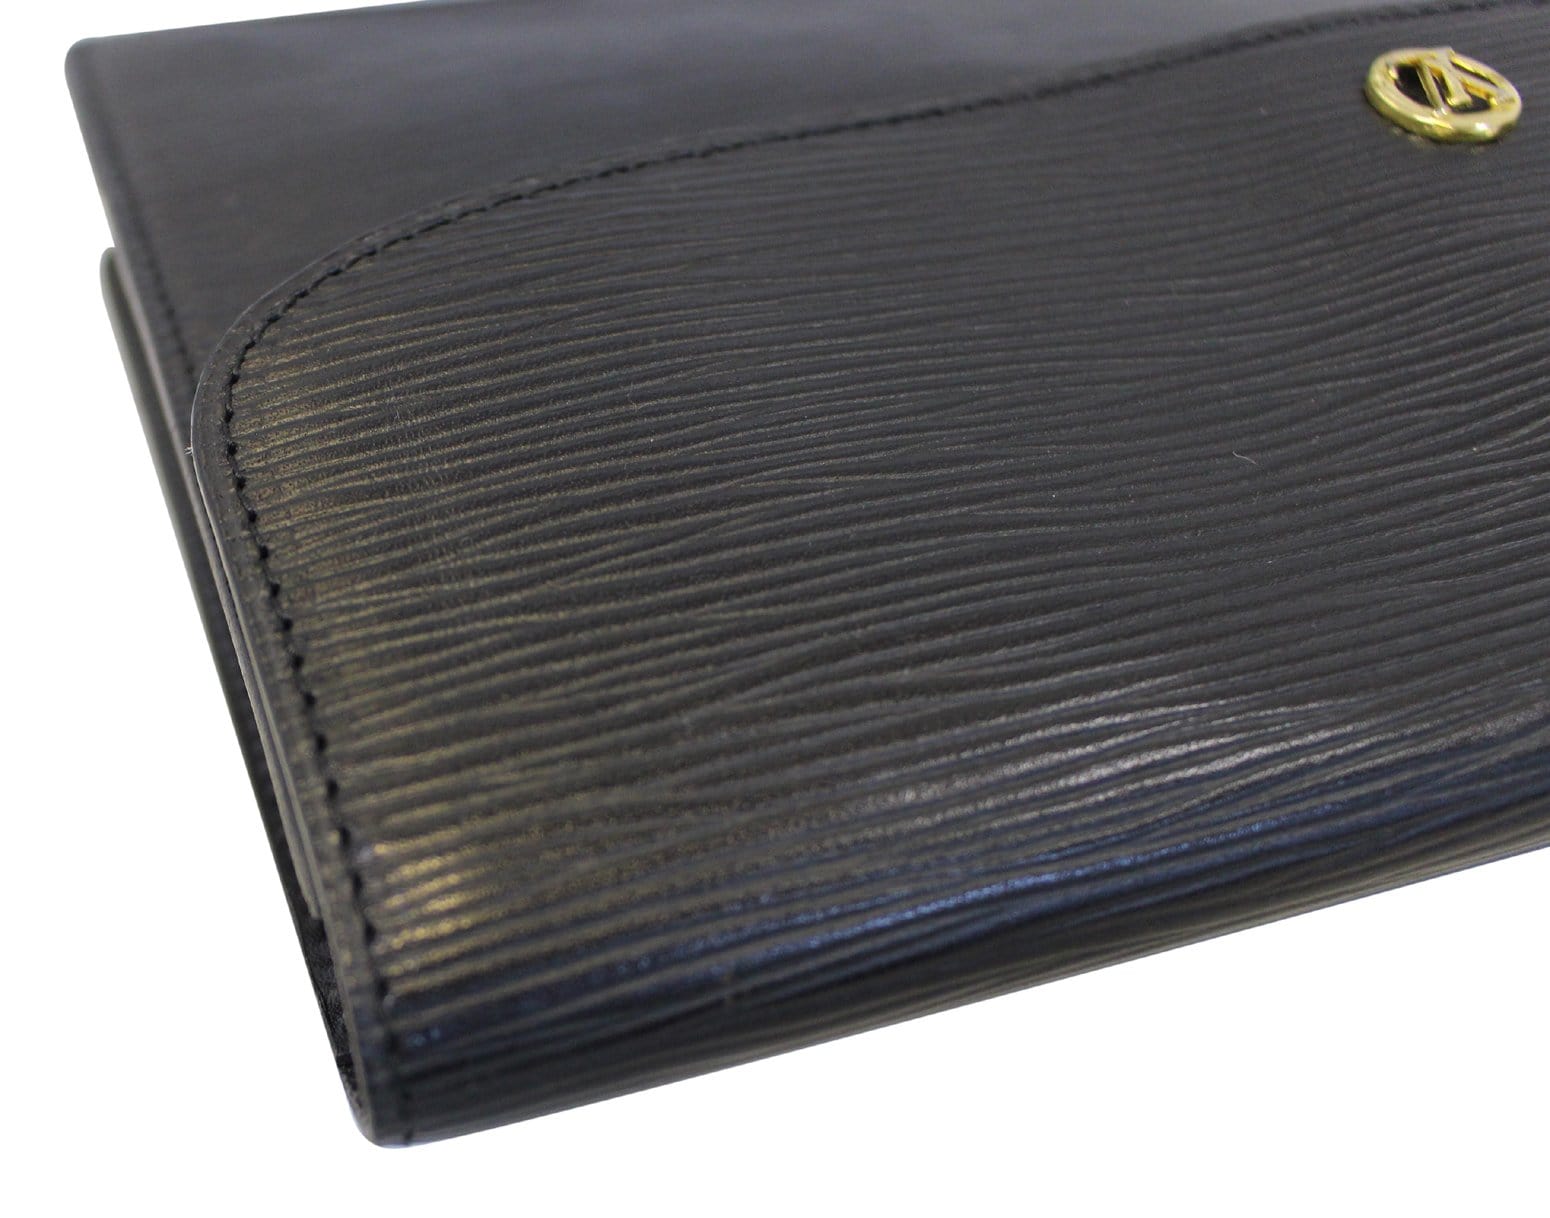 LOUIS VUITTON Montaigne Pochette Epi Leather Clutch Bag Black